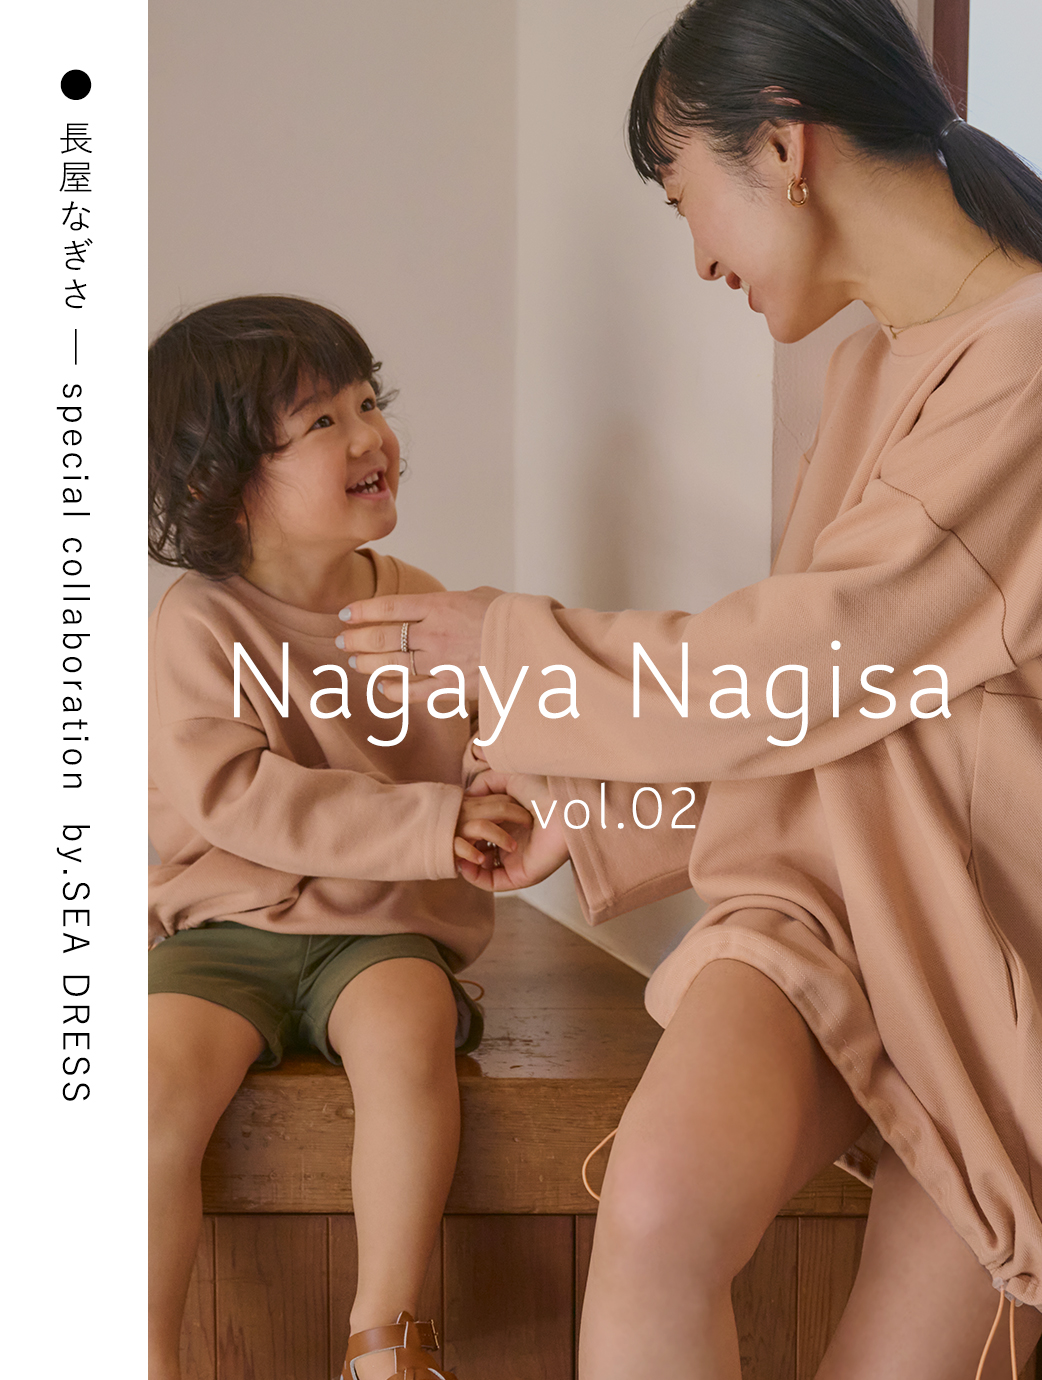 Nagaya Nagisa vol.02